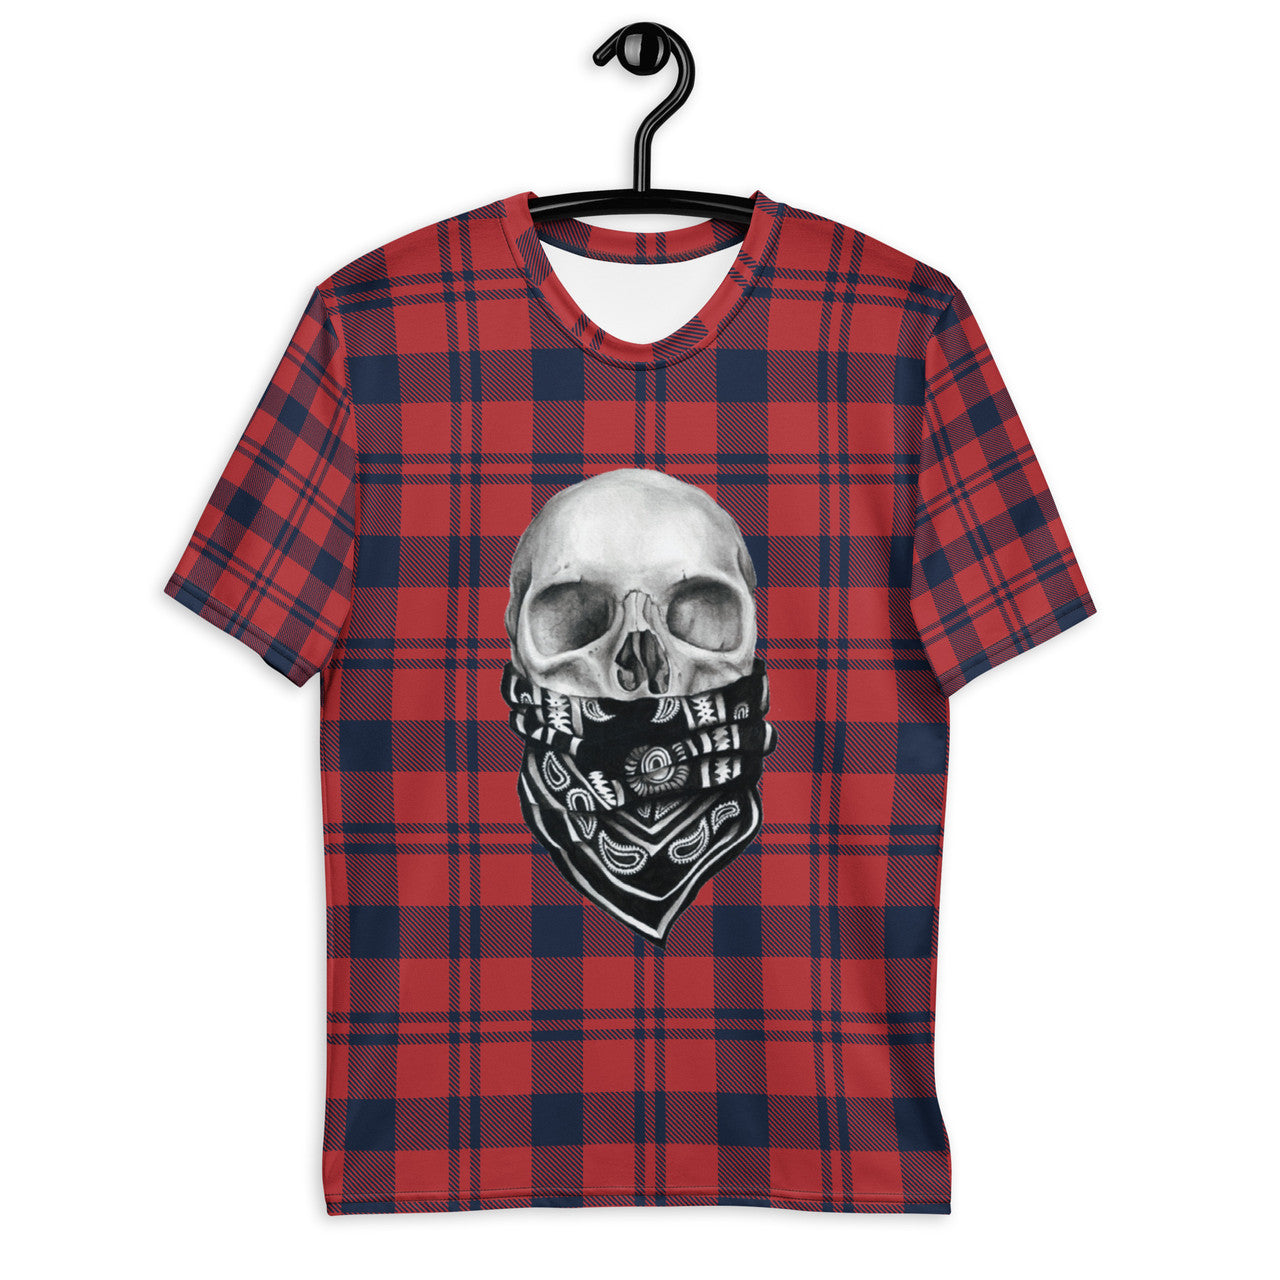 Tartan Skull KiSS Men's t-shirt - Unique Skulls